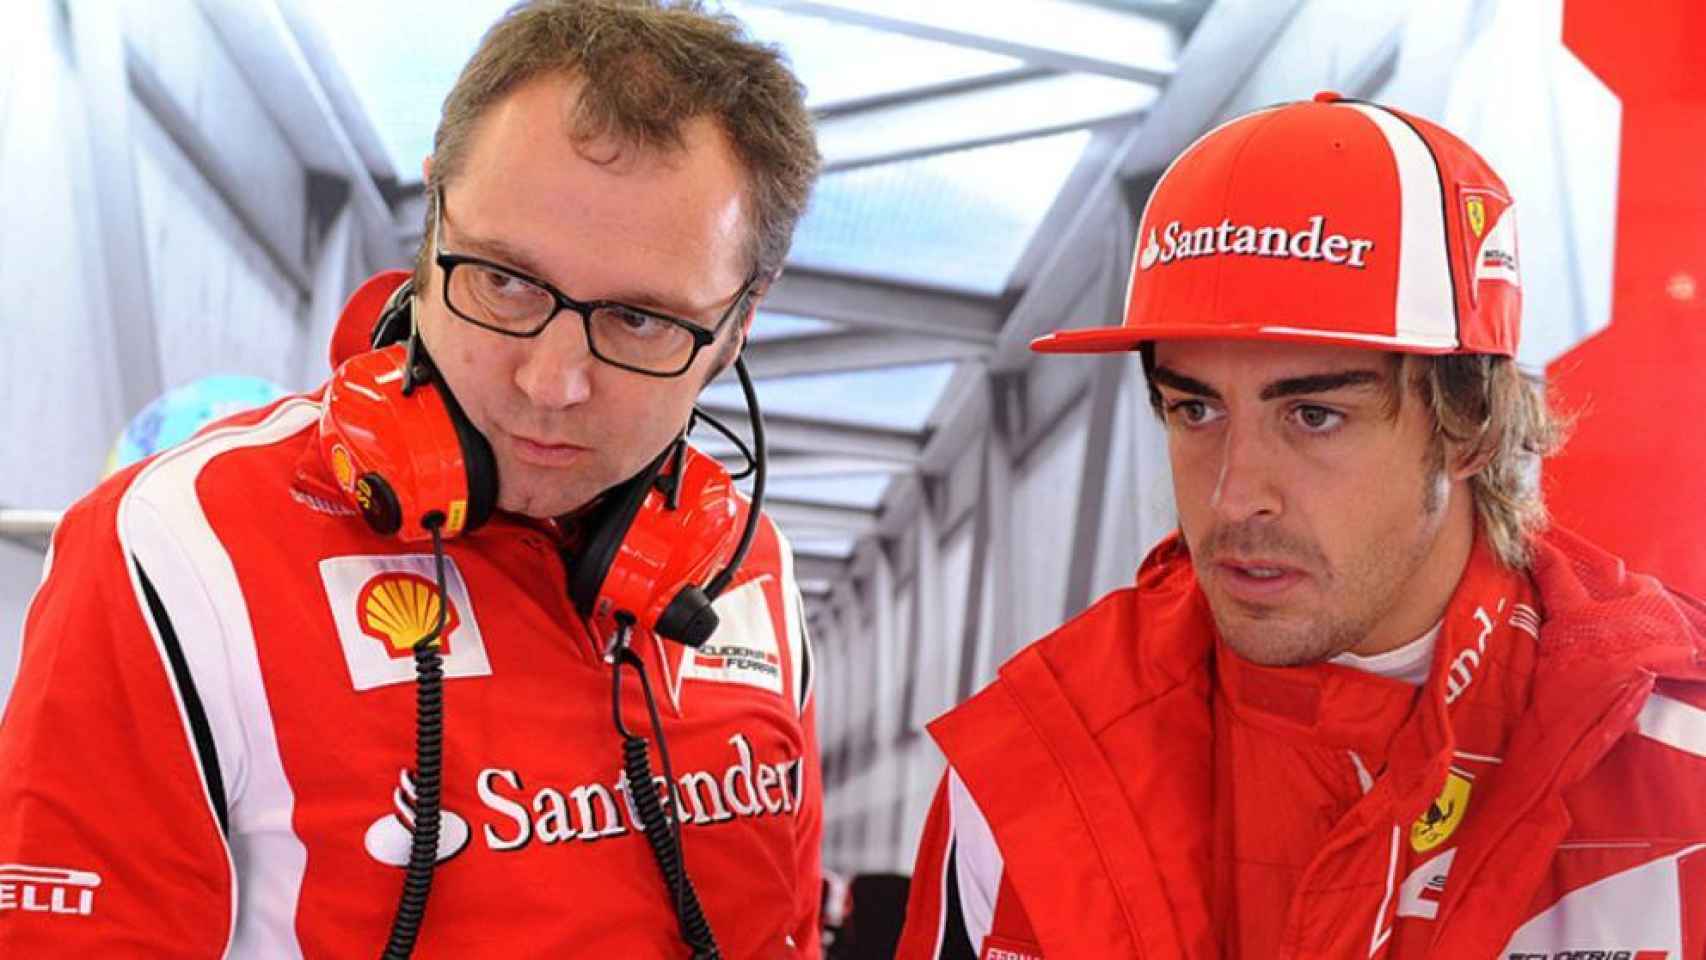 El guiño de Domenicali a Fernando Alonso por la Fórmula 1 en Madrid